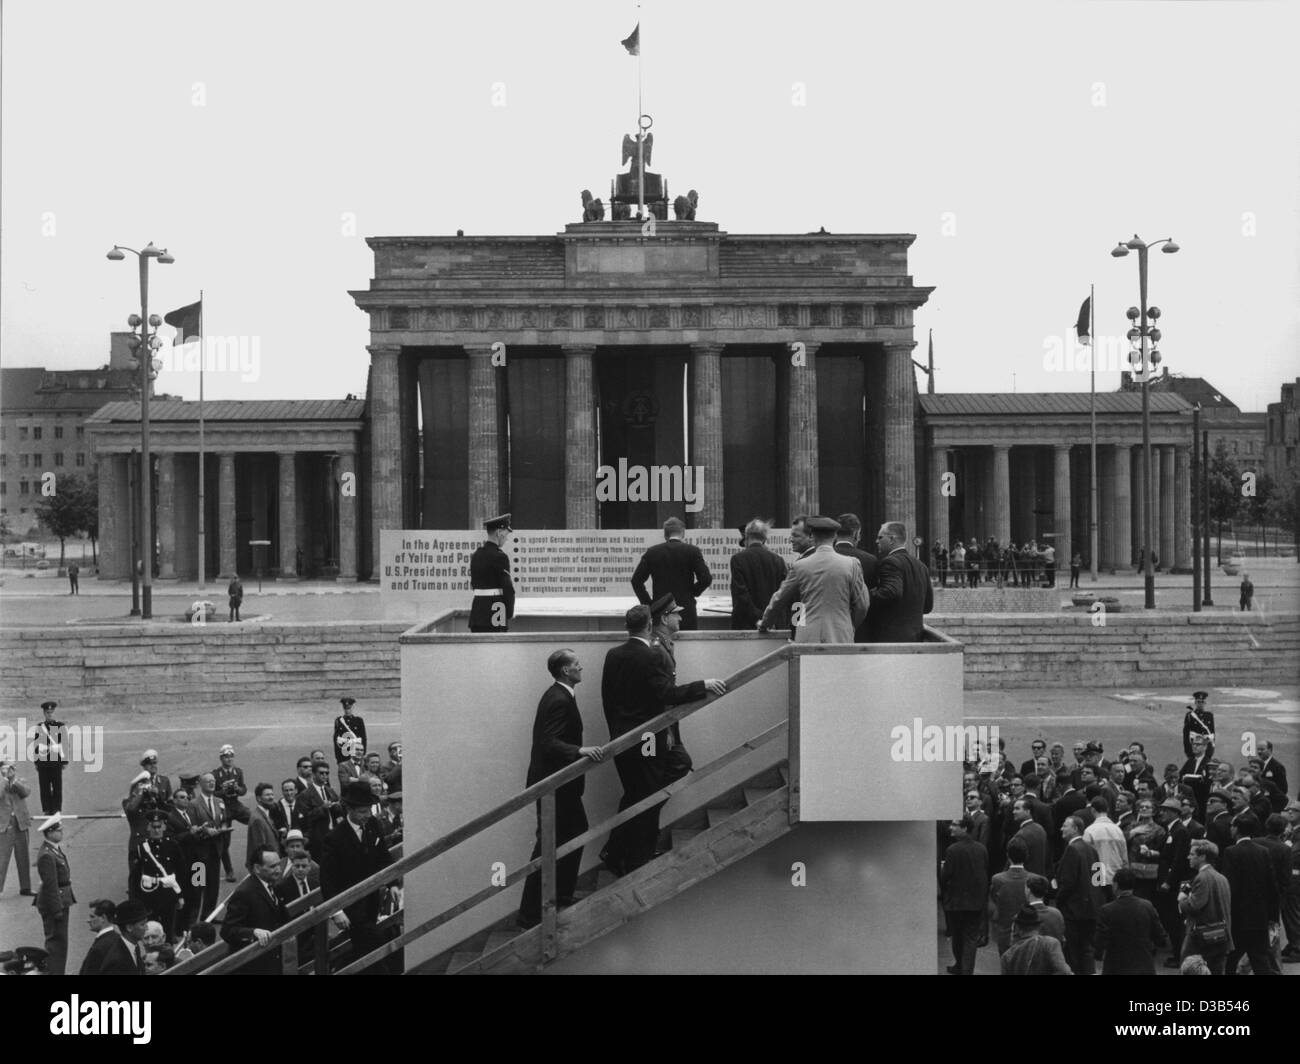 (Dpa-Dateien) - US-Präsident John F. Kennedy ist umgeben von Journalisten, wie er über die Berliner Mauer am Brandenburger Tor, West Berlin, 26. Juni 1963 aussieht. Der Höhepunkt des seinen sieben-Stunden-Aufenthalt in Berlin war seine Rede, in denen drückte er seine Gefühle für die geteilte Stadt mit den Worten auf Deutsch "Ich Stockfoto